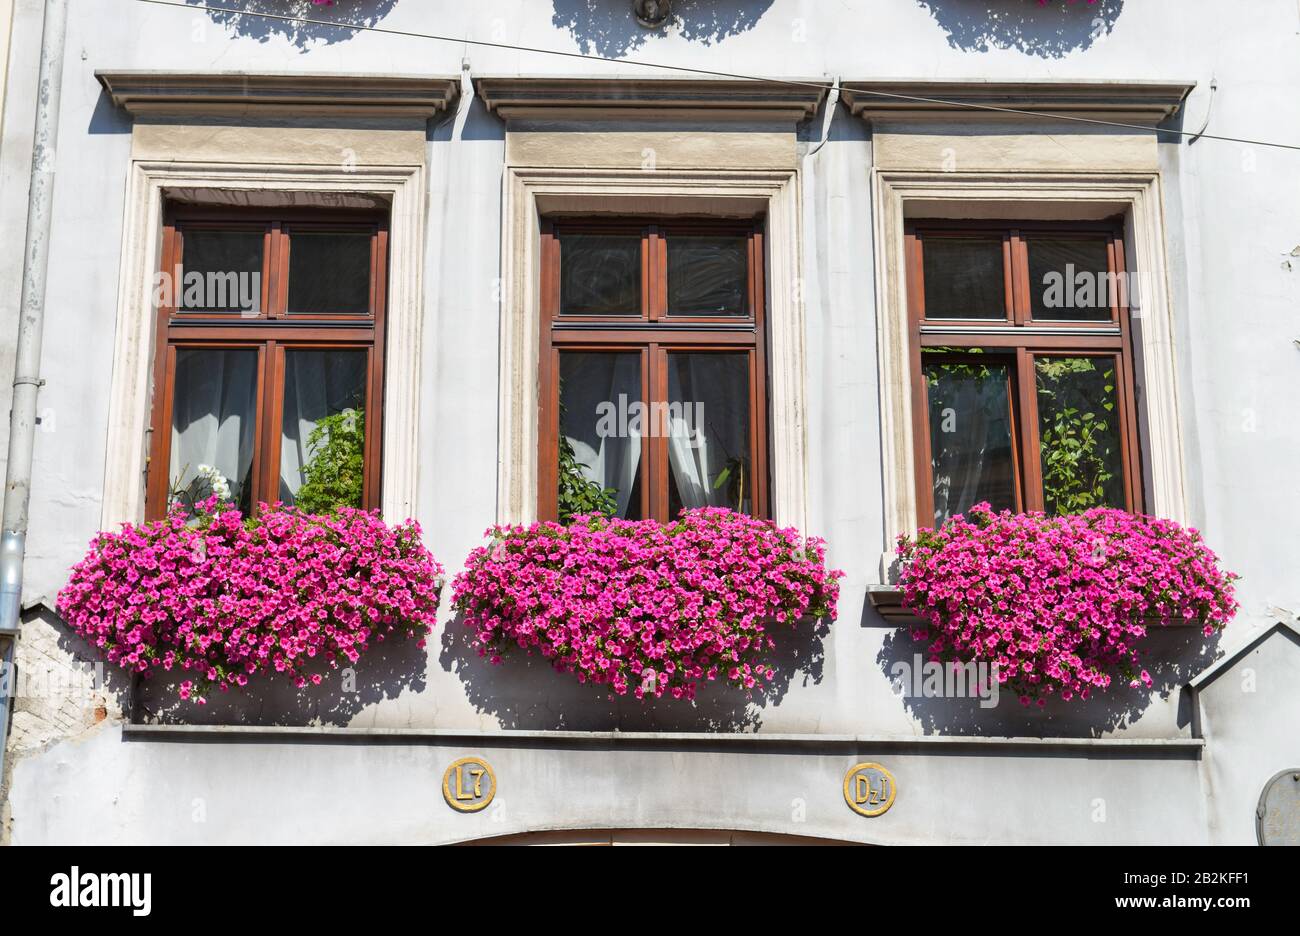 Fensterblumen, Petunien (Petunia), Altstadt, Krakau, Polen Stock Photo